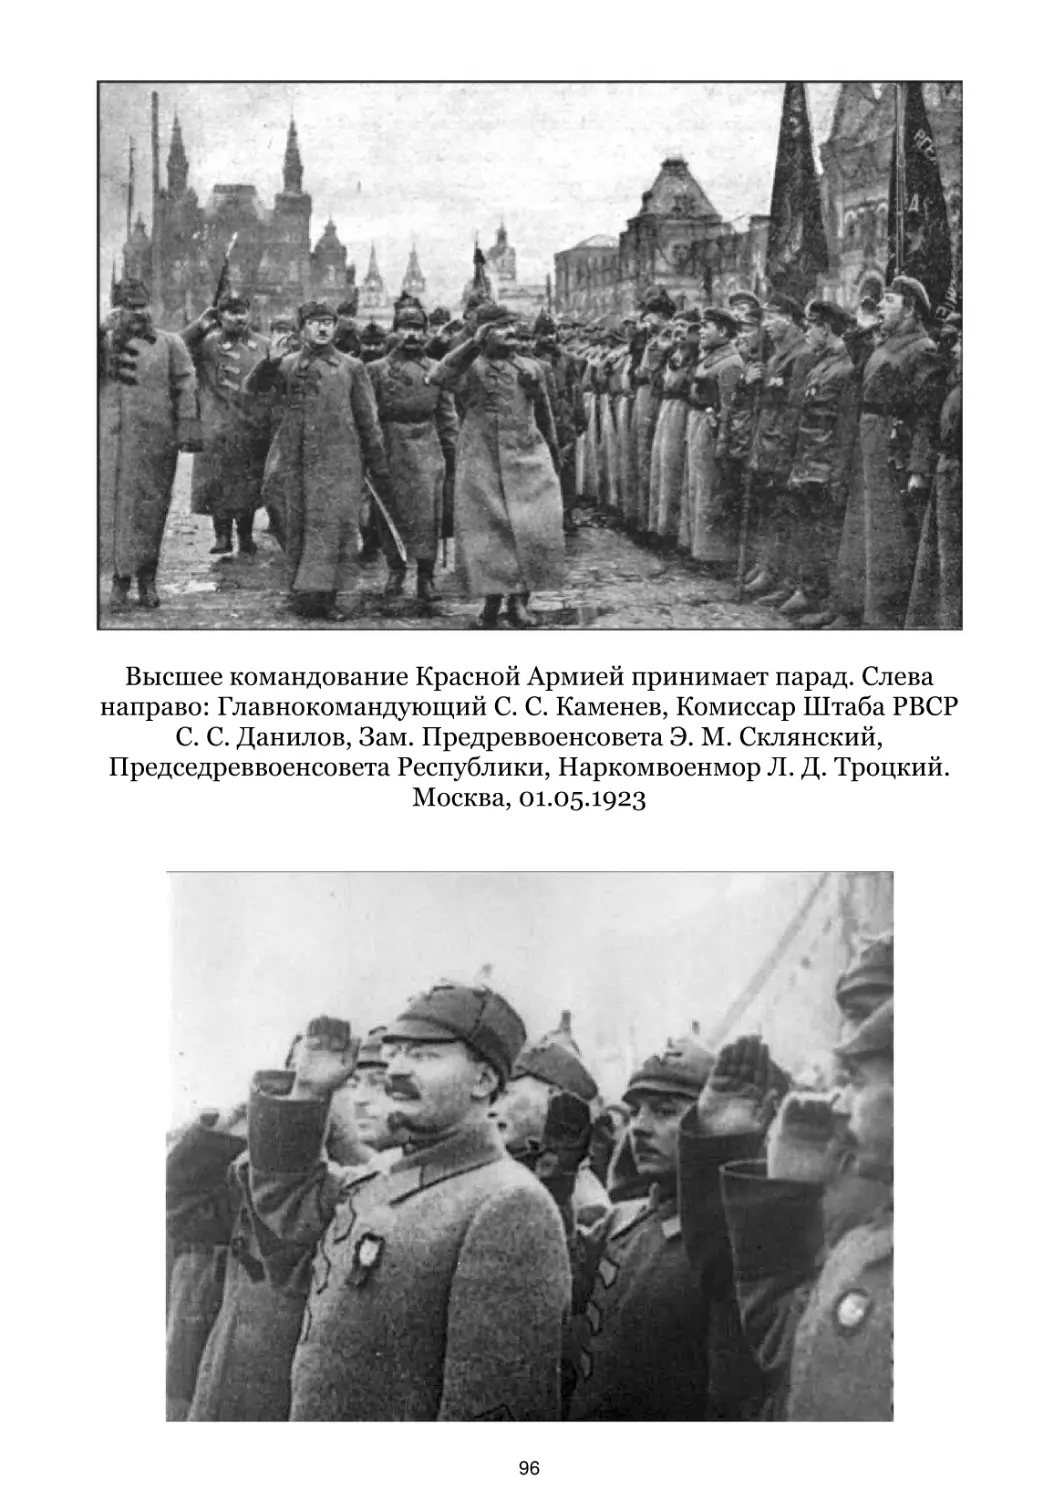 Высшее командование Красной Армией принимает парад. Москва, 01.05.1923